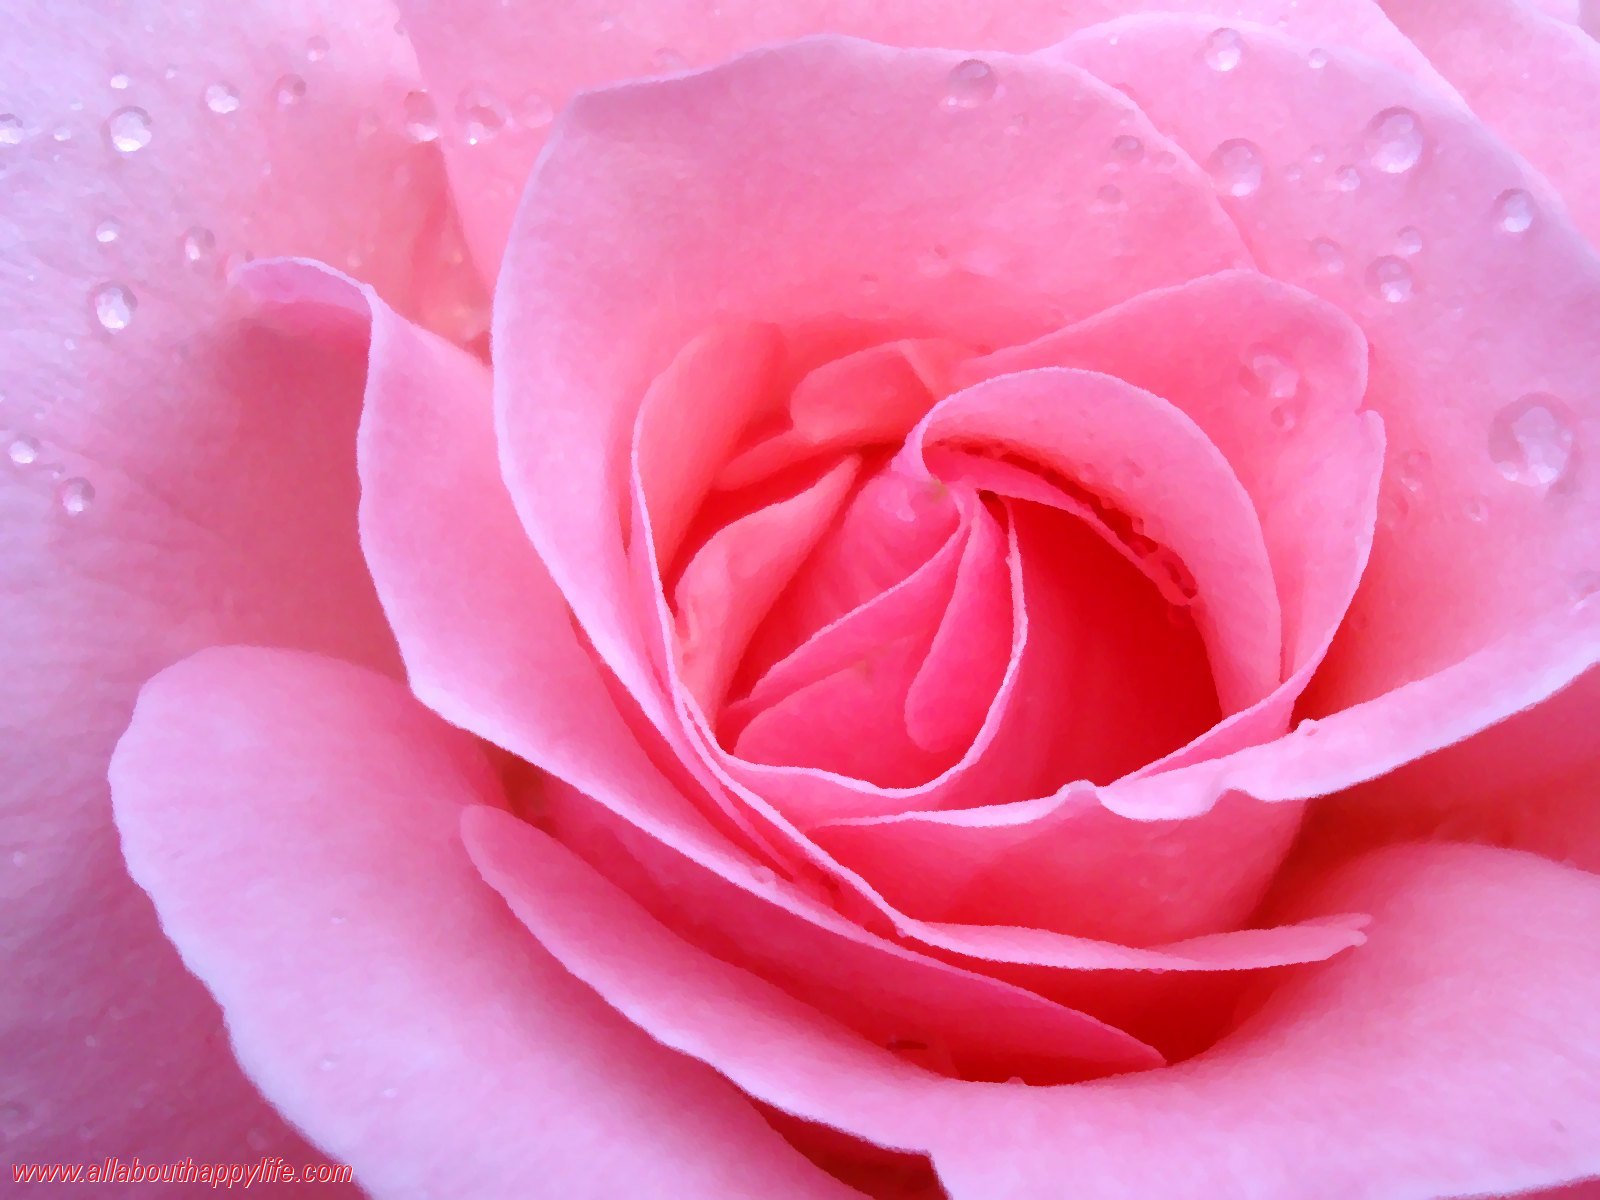 Wallpaper Rose Of Love - Roses Of Love - HD Wallpaper 